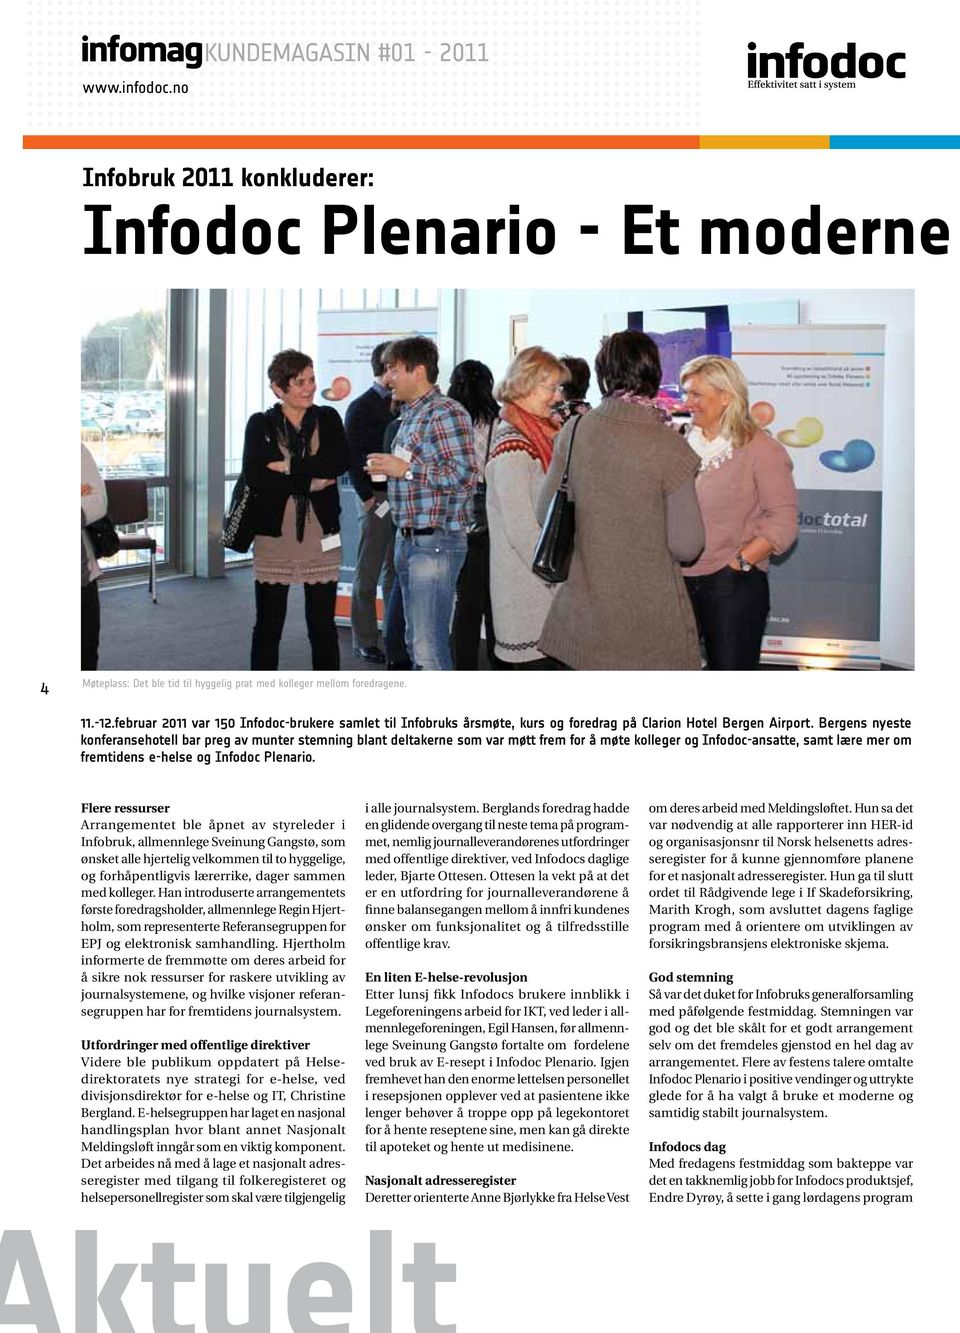 Bergens nyeste konferansehotell bar preg av munter stemning blant deltakerne som var møtt frem for å møte kolleger og Infodoc-ansatte, samt lære mer om fremtidens e-helse og Infodoc Plenario.